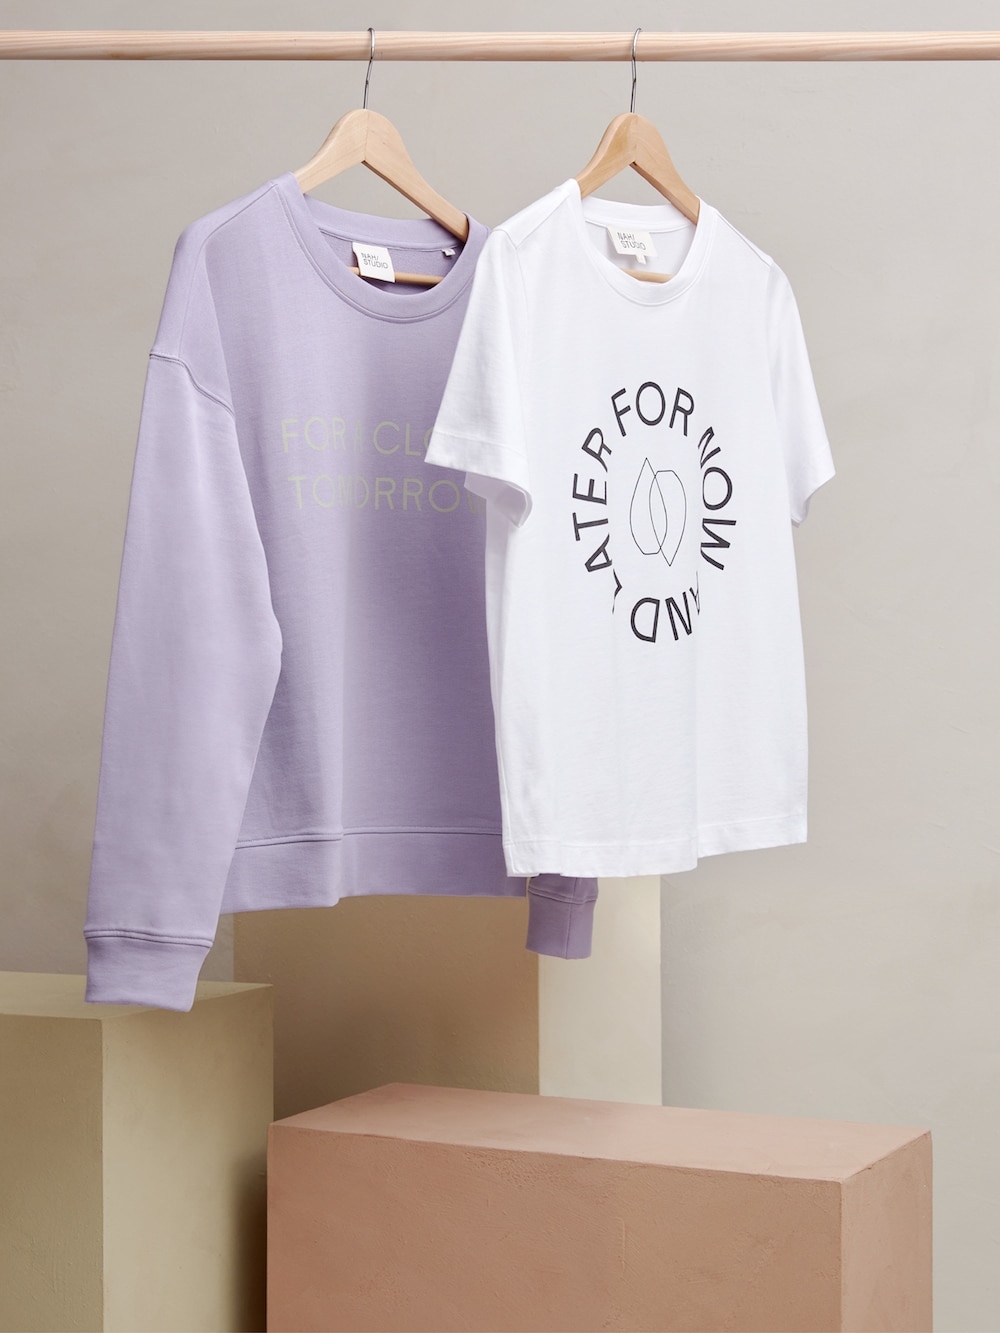 Studio Oeding gestaltet NAH/STUDIO: Fliederfarbener Pullover und weißes T-Shirt auf einer Kleiderstange